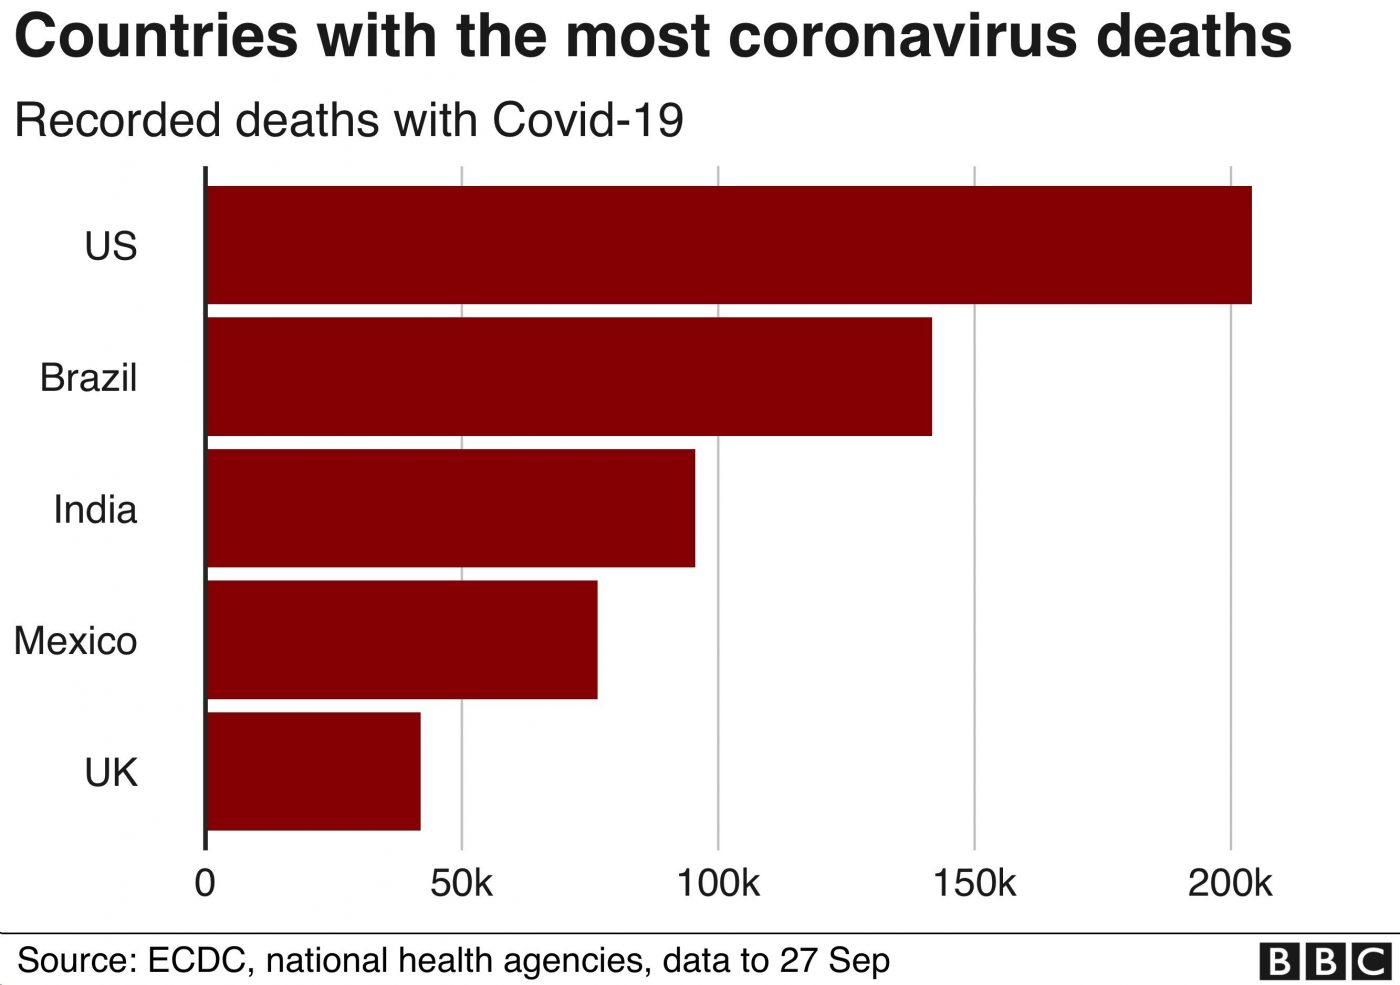 کورونا وائرس